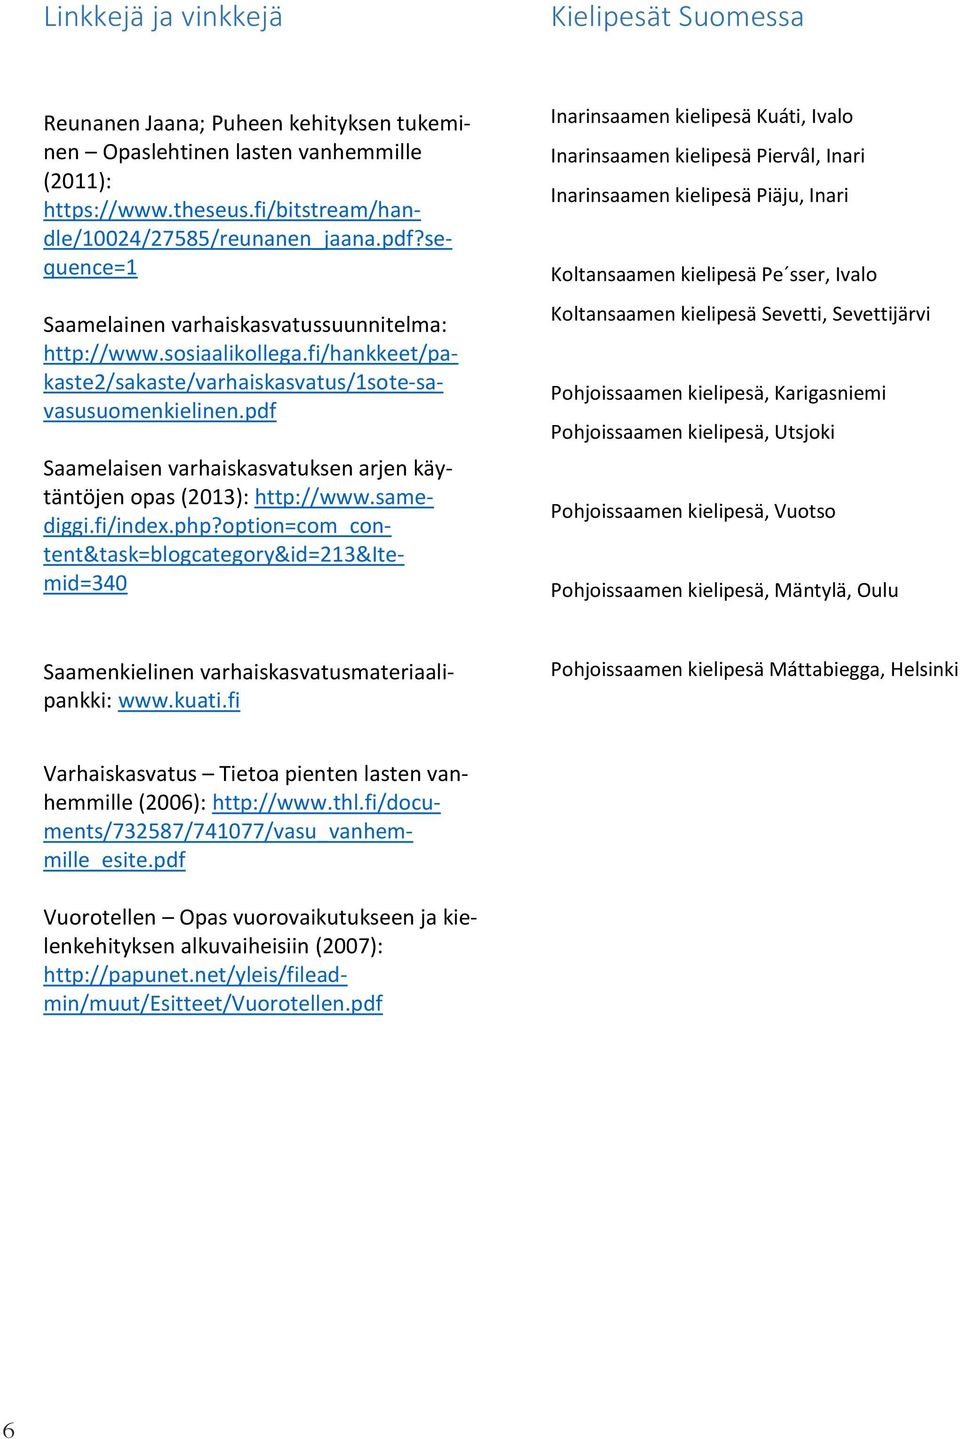 pdf Saamelaisen varhaiskasvatuksen arjen käytäntöjen opas (2013): http://www.samediggi.fi/index.php?